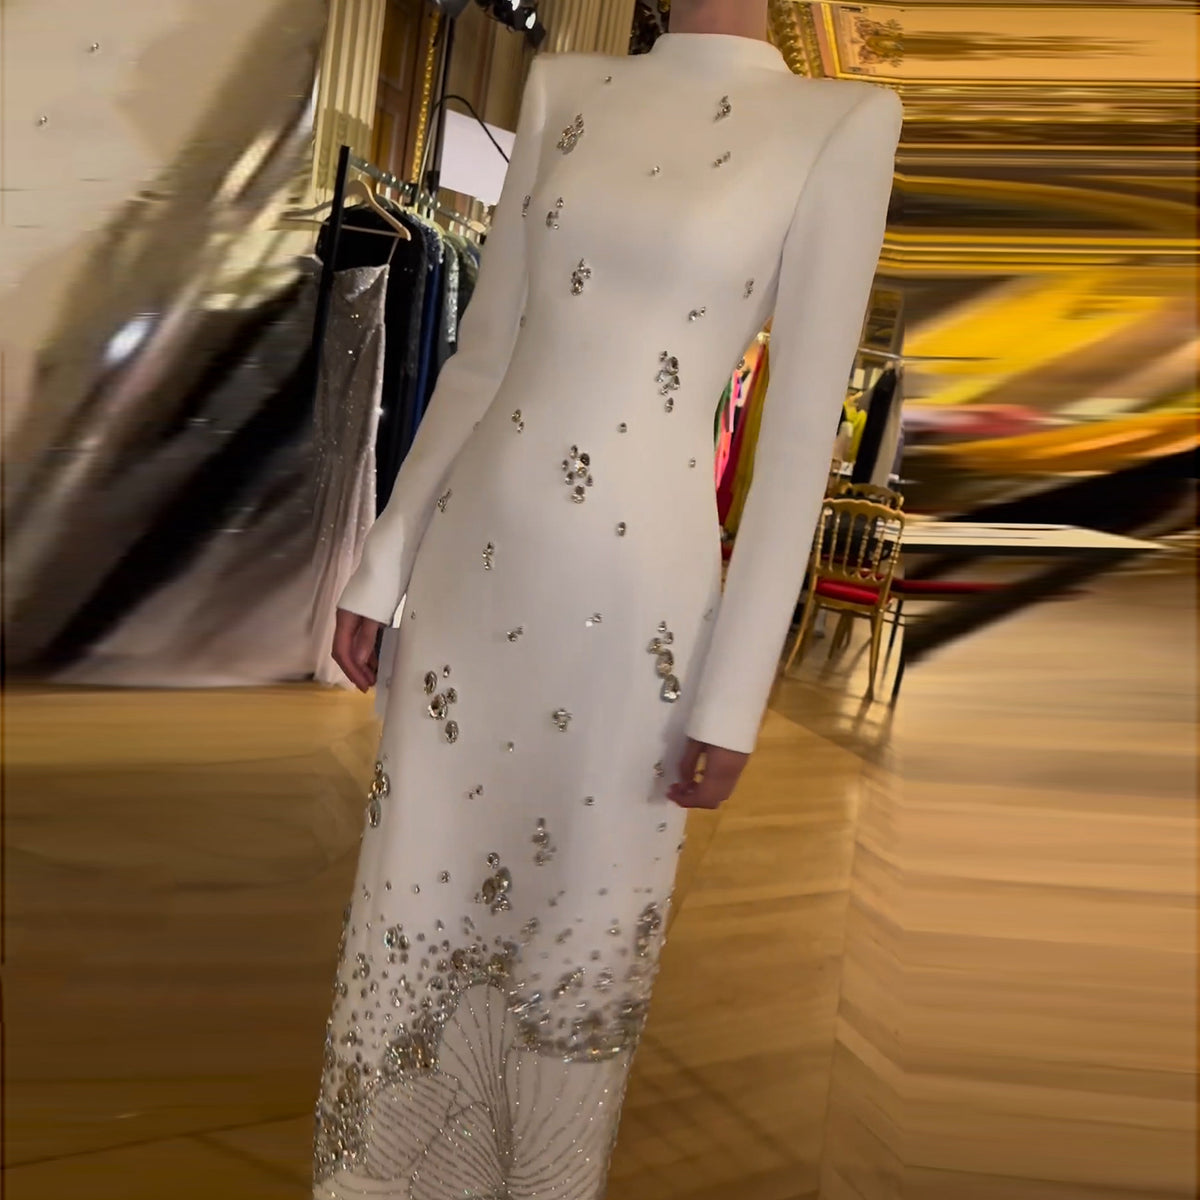 Sharon Said Arabisch Schwarz One Shoulder Meerjungfrau Luxus Abendkleid mit Cape-Ärmeln Elegantes Dubai Frauen Hochzeitspartykleid SS389